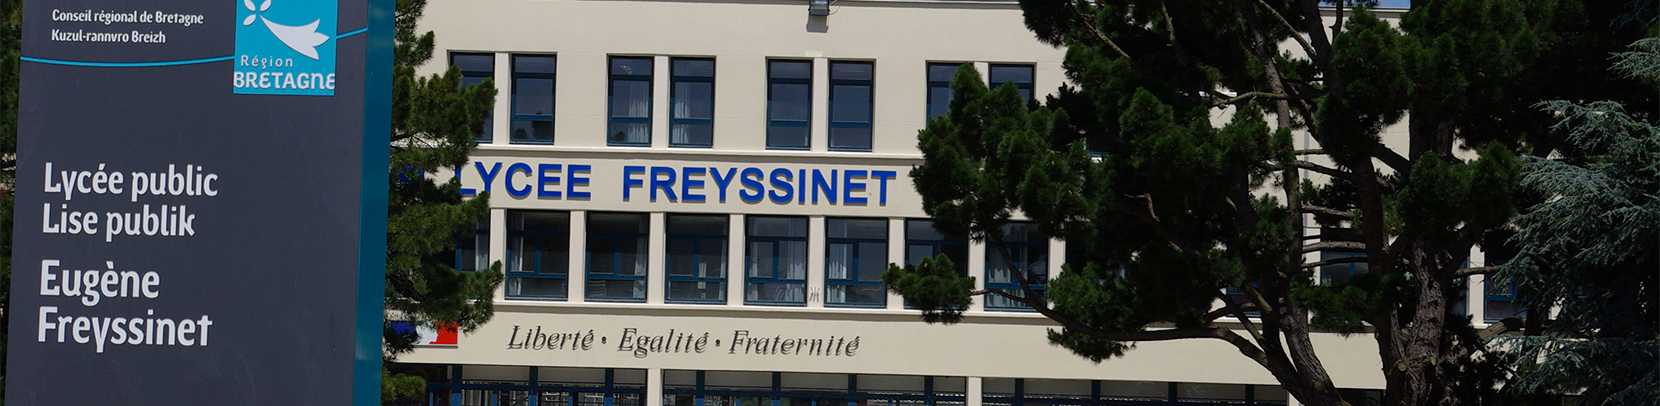 Lycée Freyssinet - Saint-Brieuc